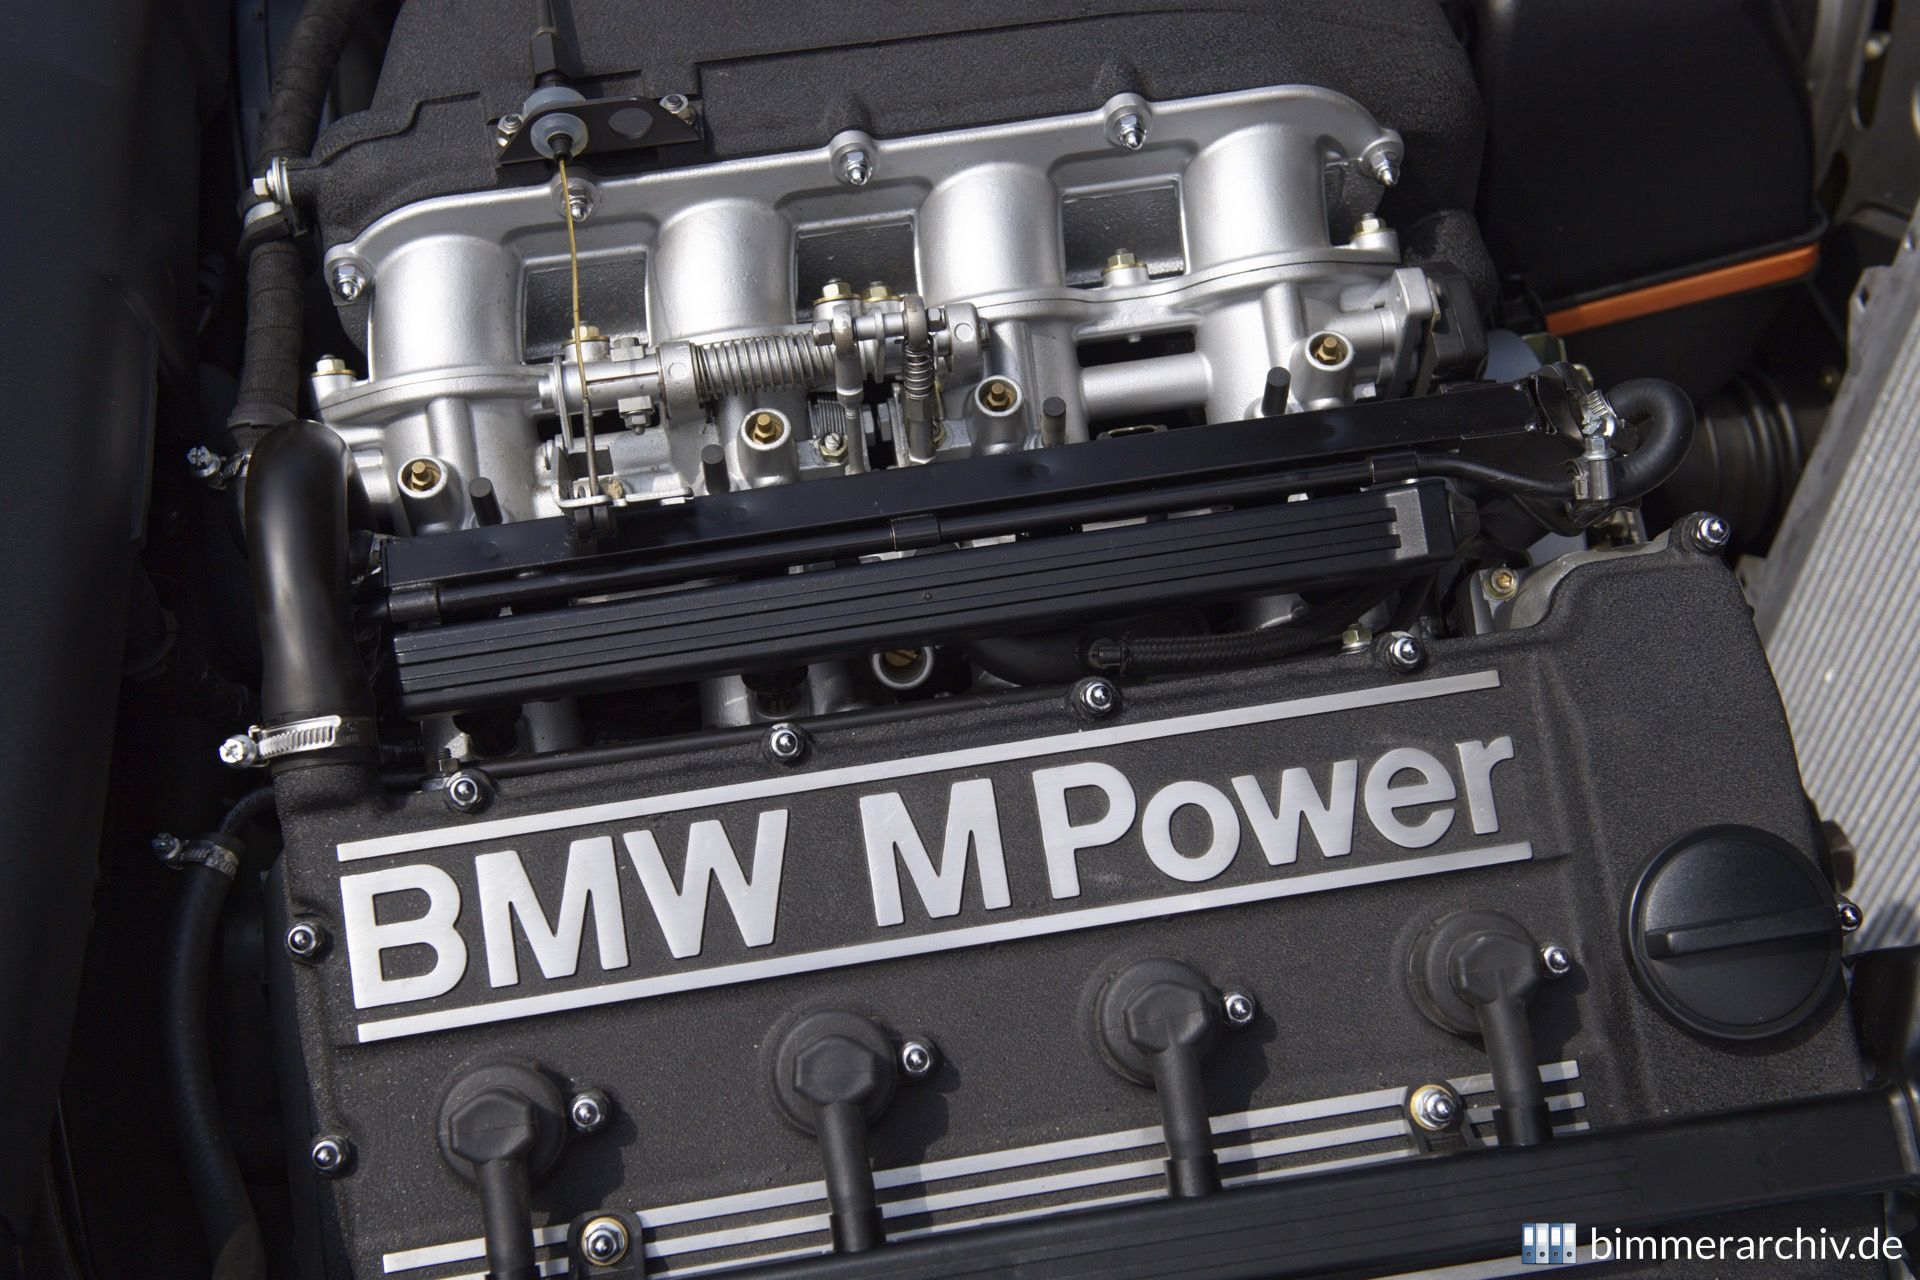 BMW M3 (E30) - Engine S14